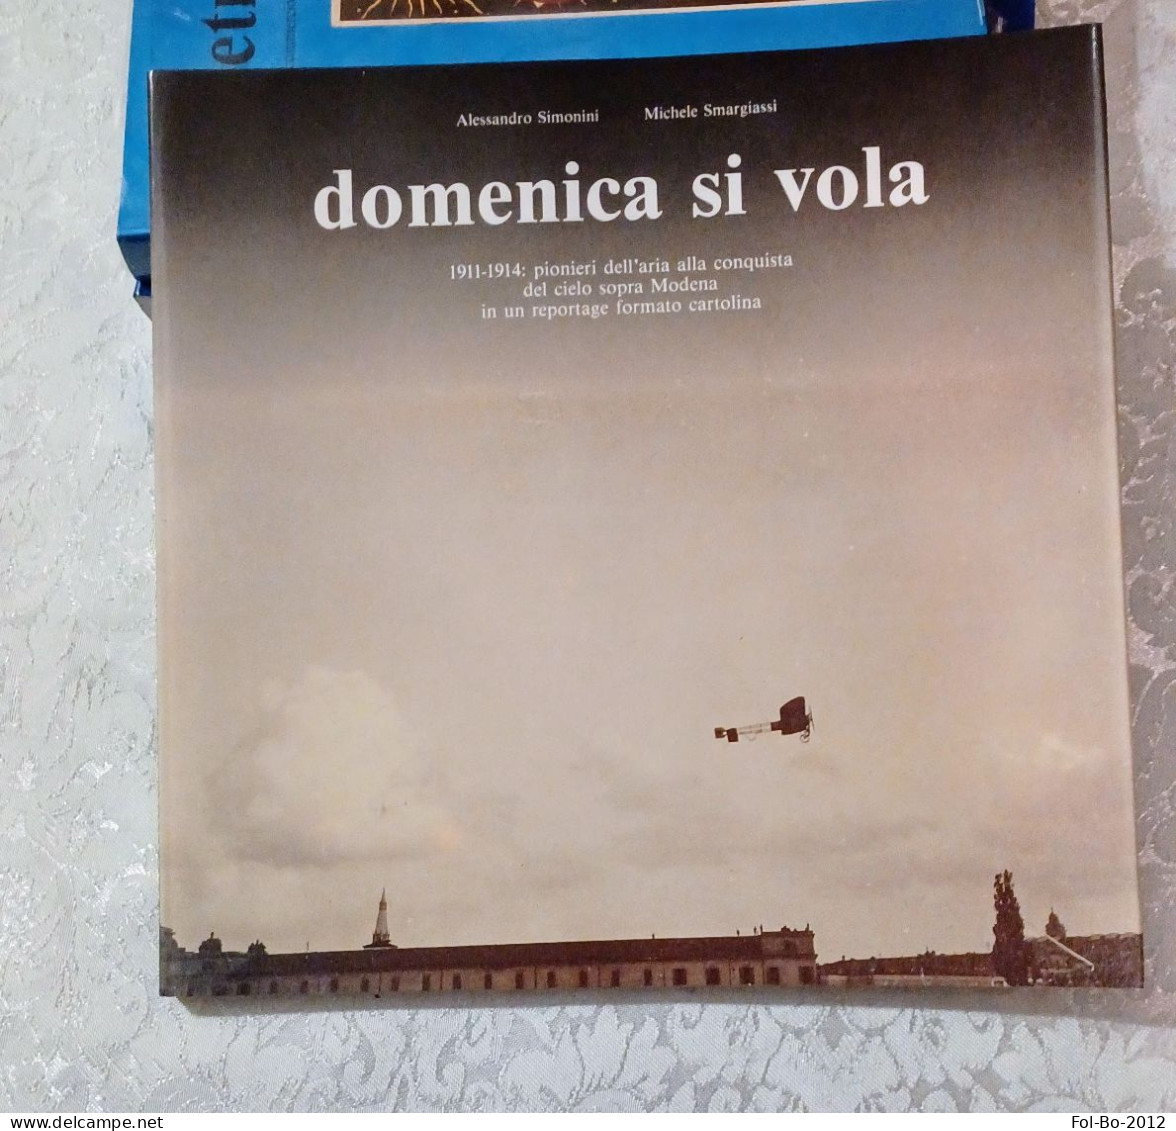 Domenica Si Vola 1911/1914 Pionieri Dell'aria Nei Cieli Sopra Modena Del 1990 - Libri & Cataloghi